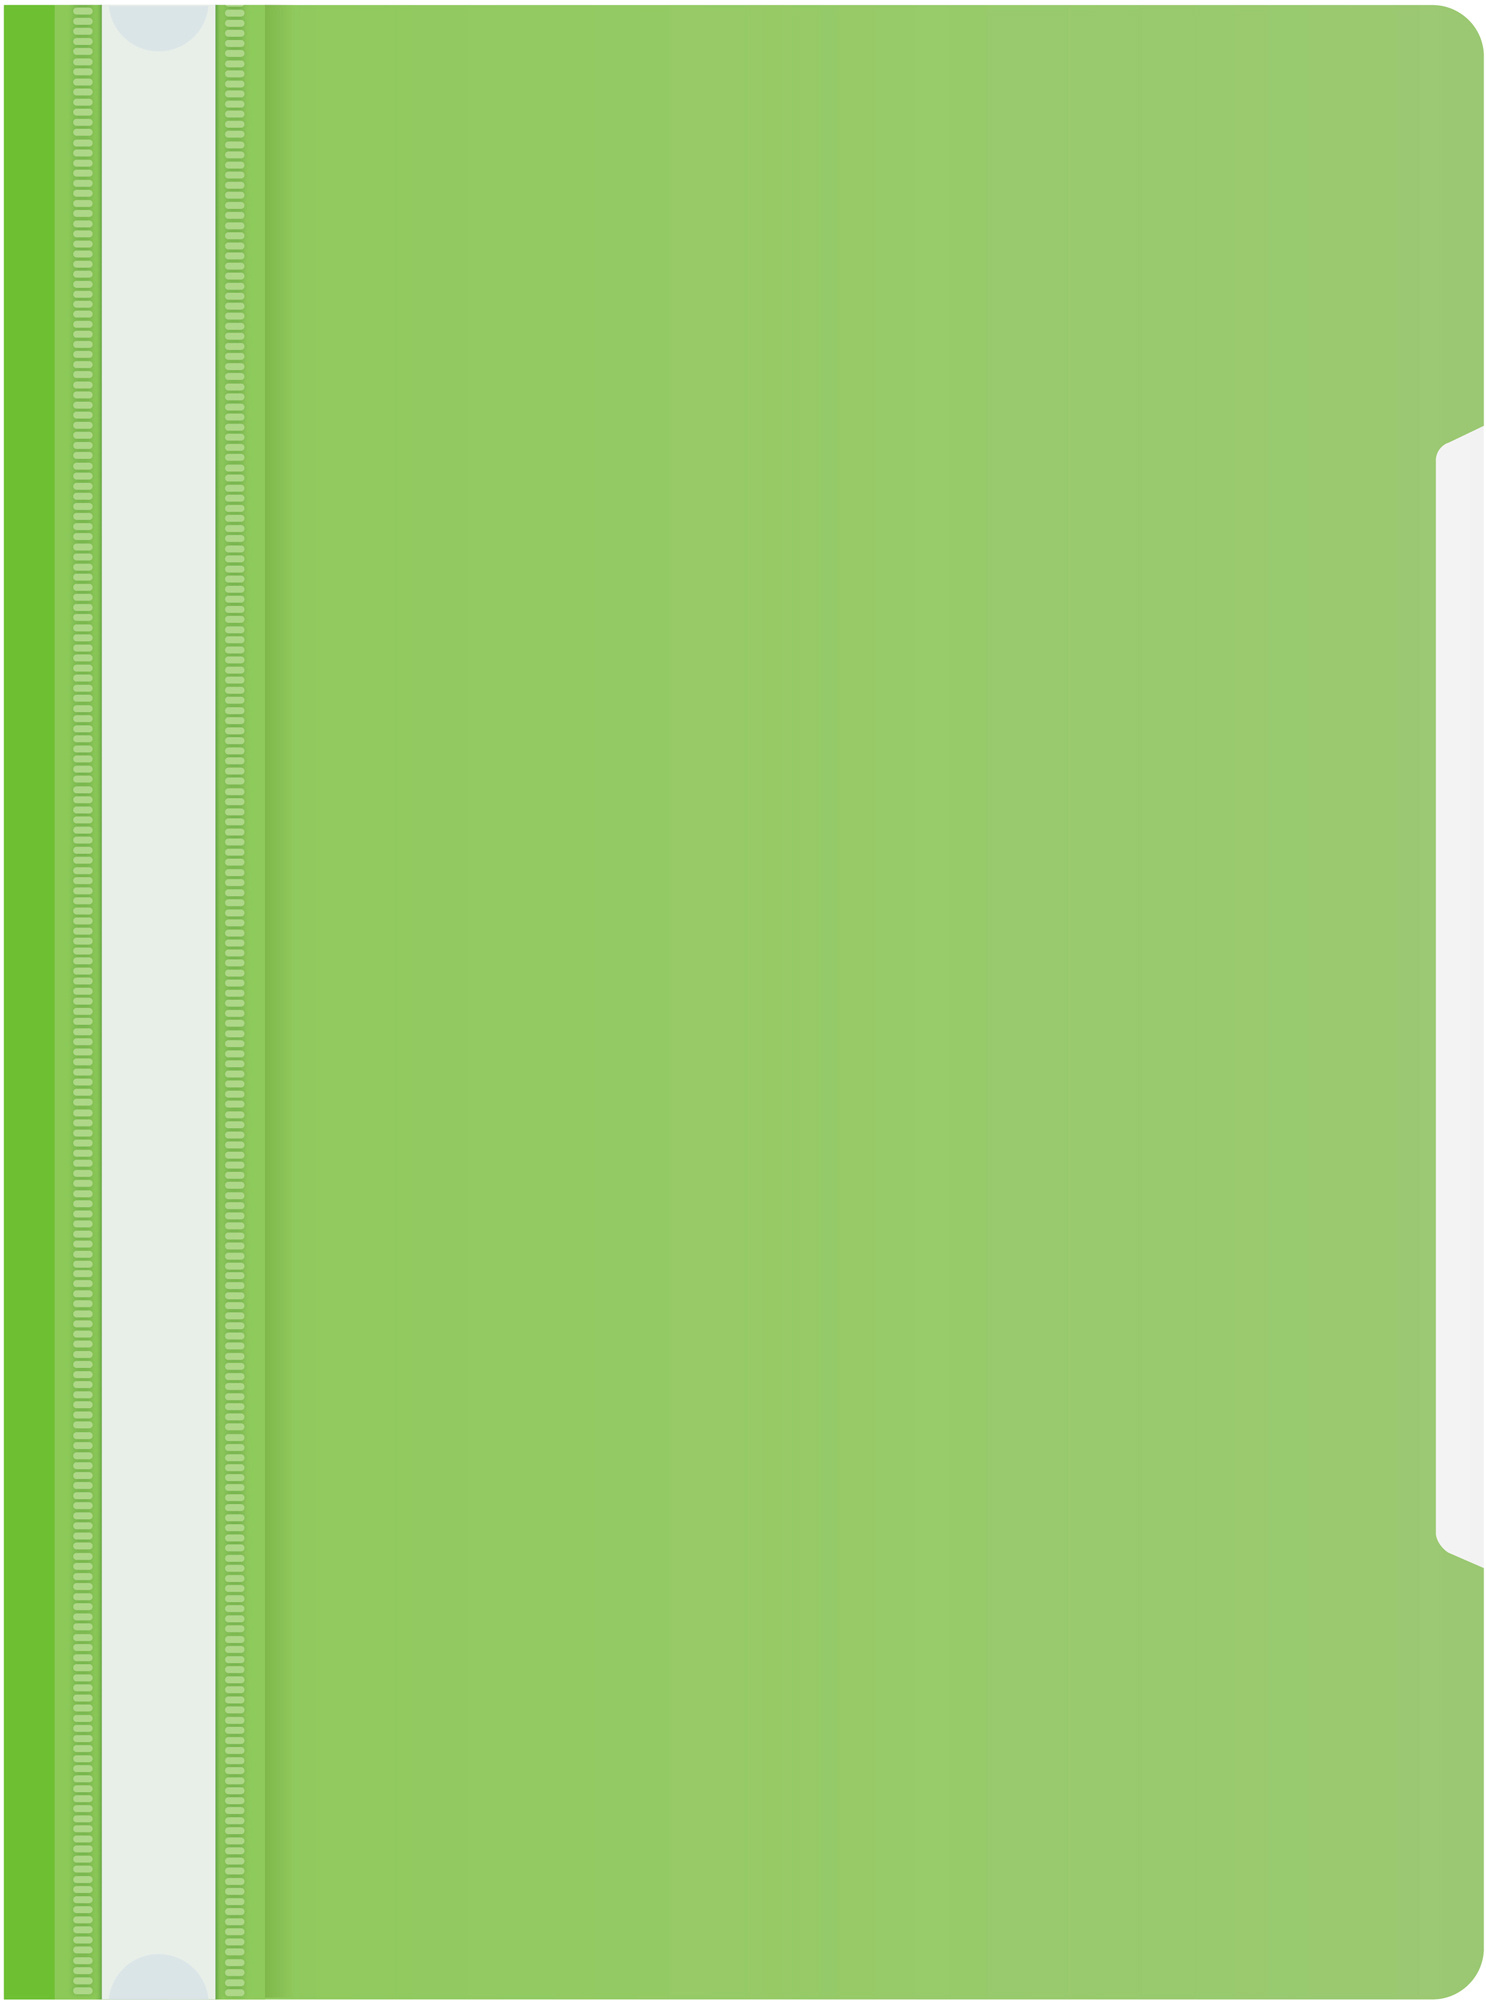 Папка-скоросшиватель Бюрократ -PS20LETT A4 прозрач.верх.лист пластик салатовый 0.12/0.16